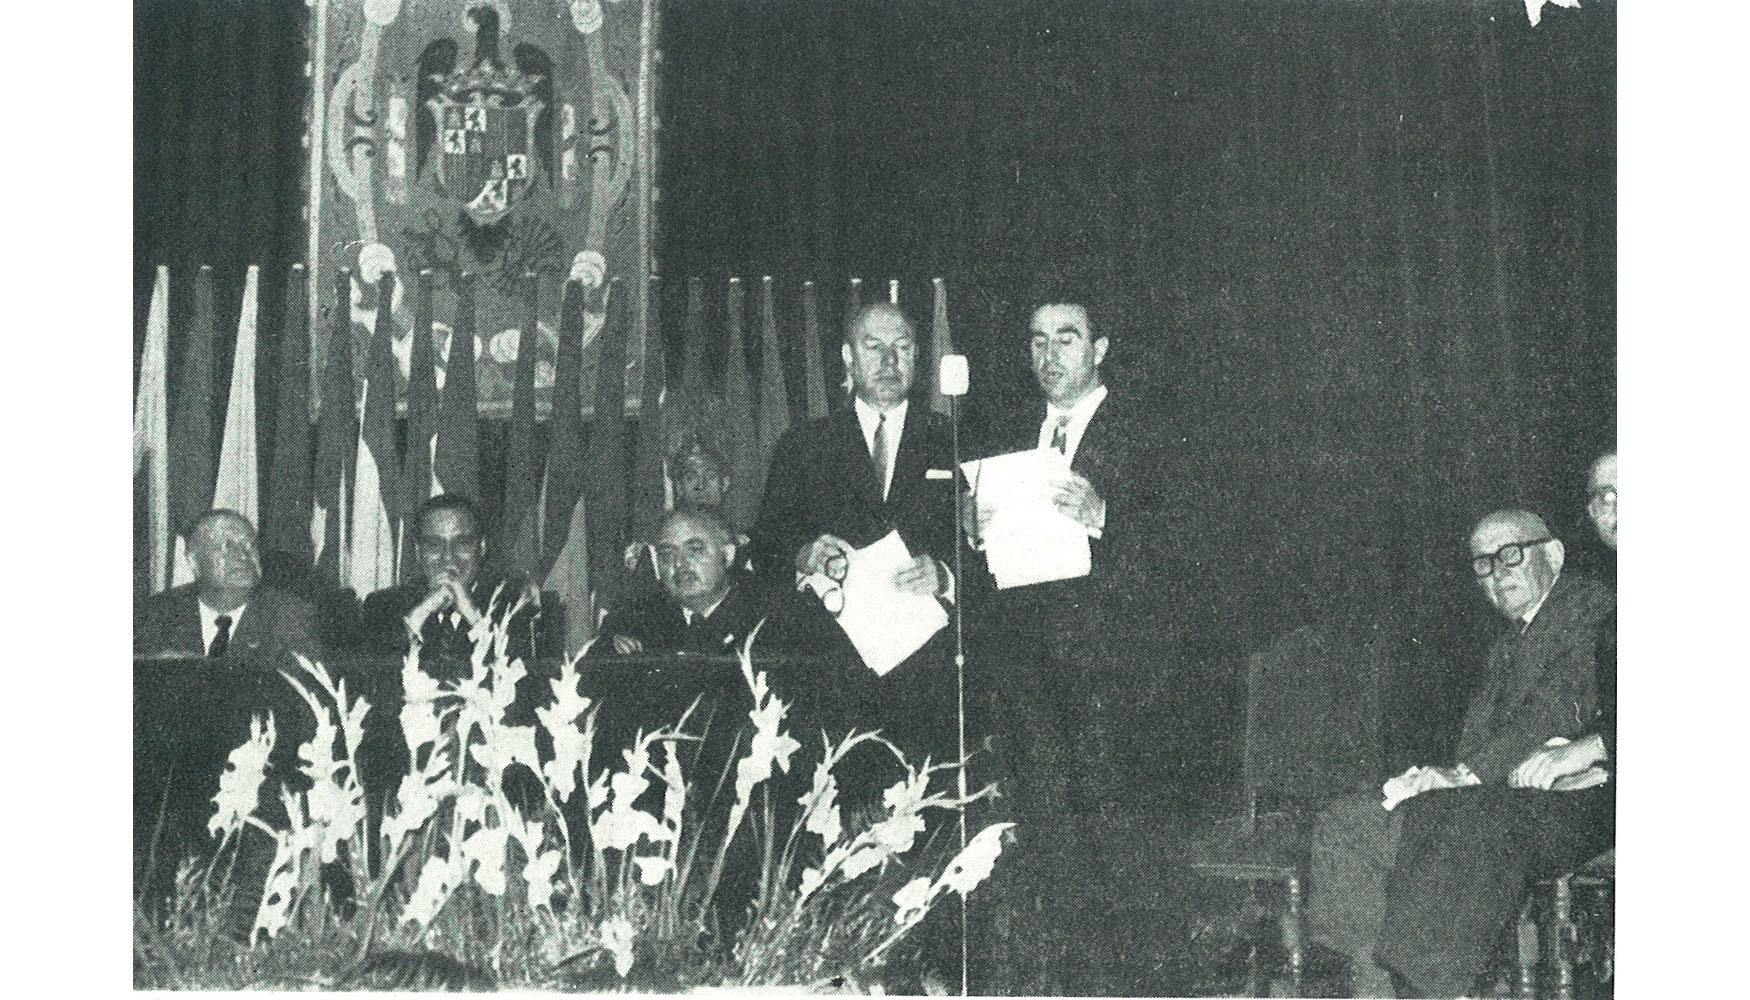 IV Reunin Mundial de Carreteras celebrada en Madrid en 1962  organizada por AEC...